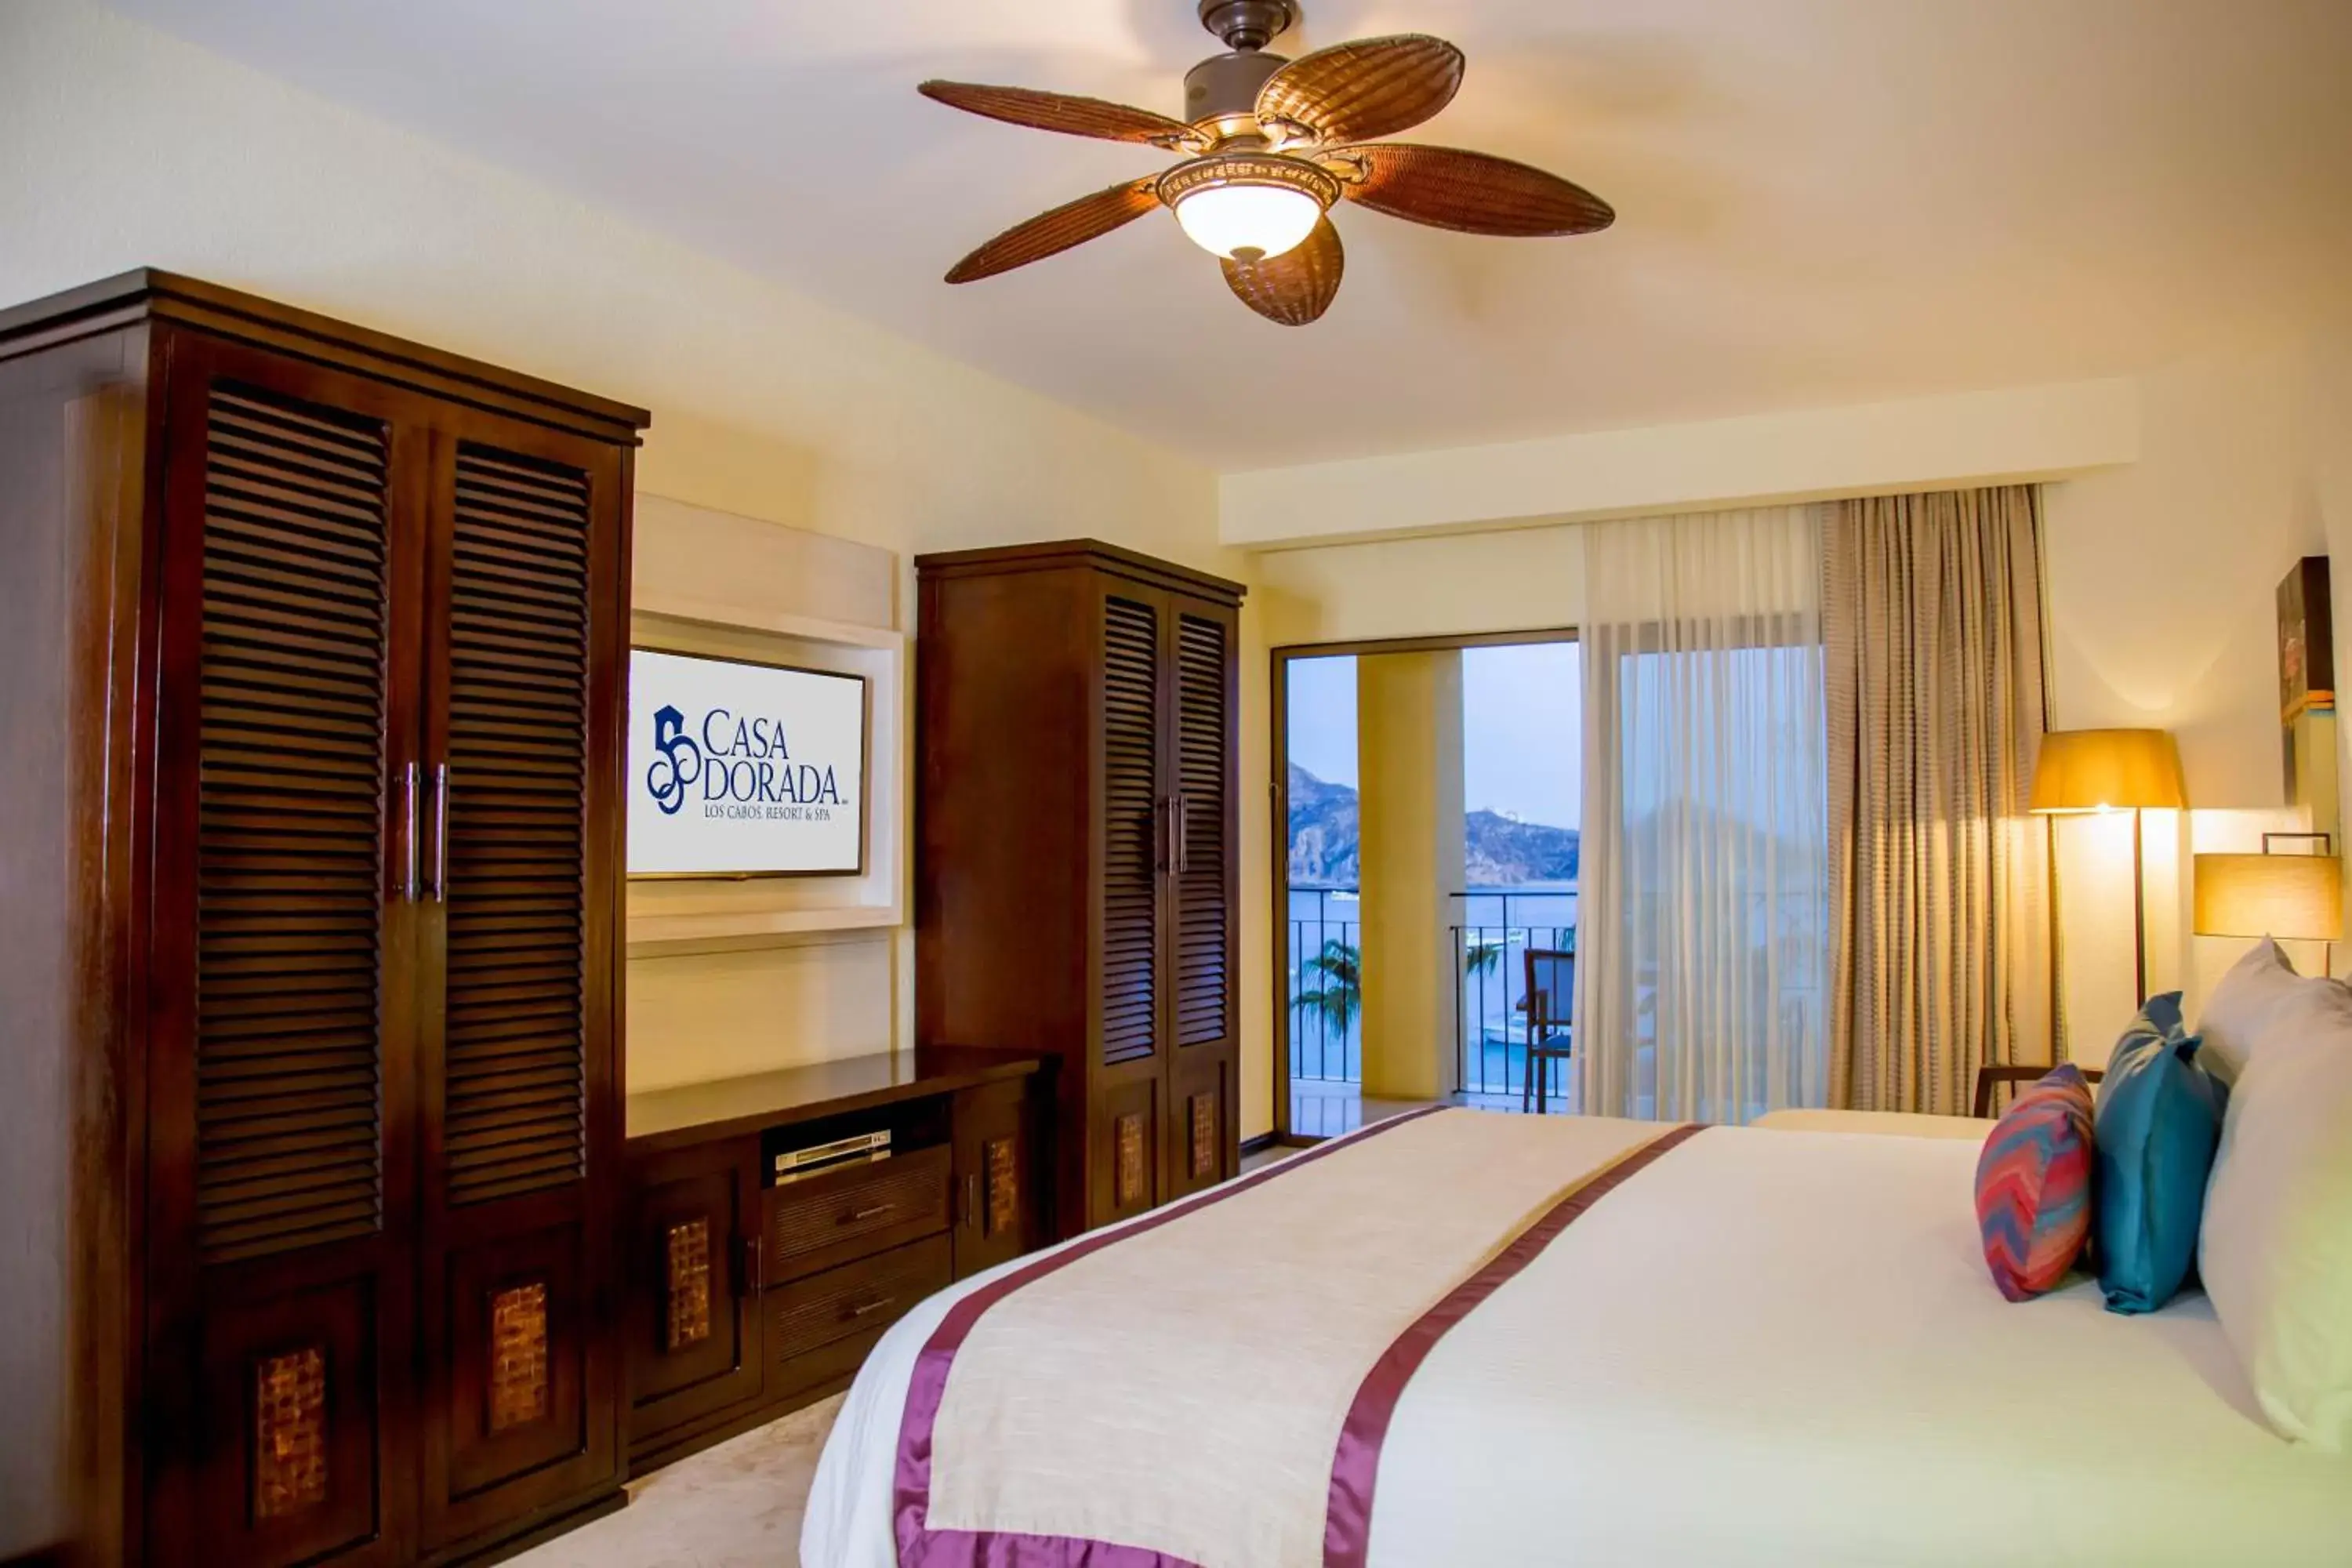 Executive Suite in Casa Dorada Los Cabos Resort & Spa